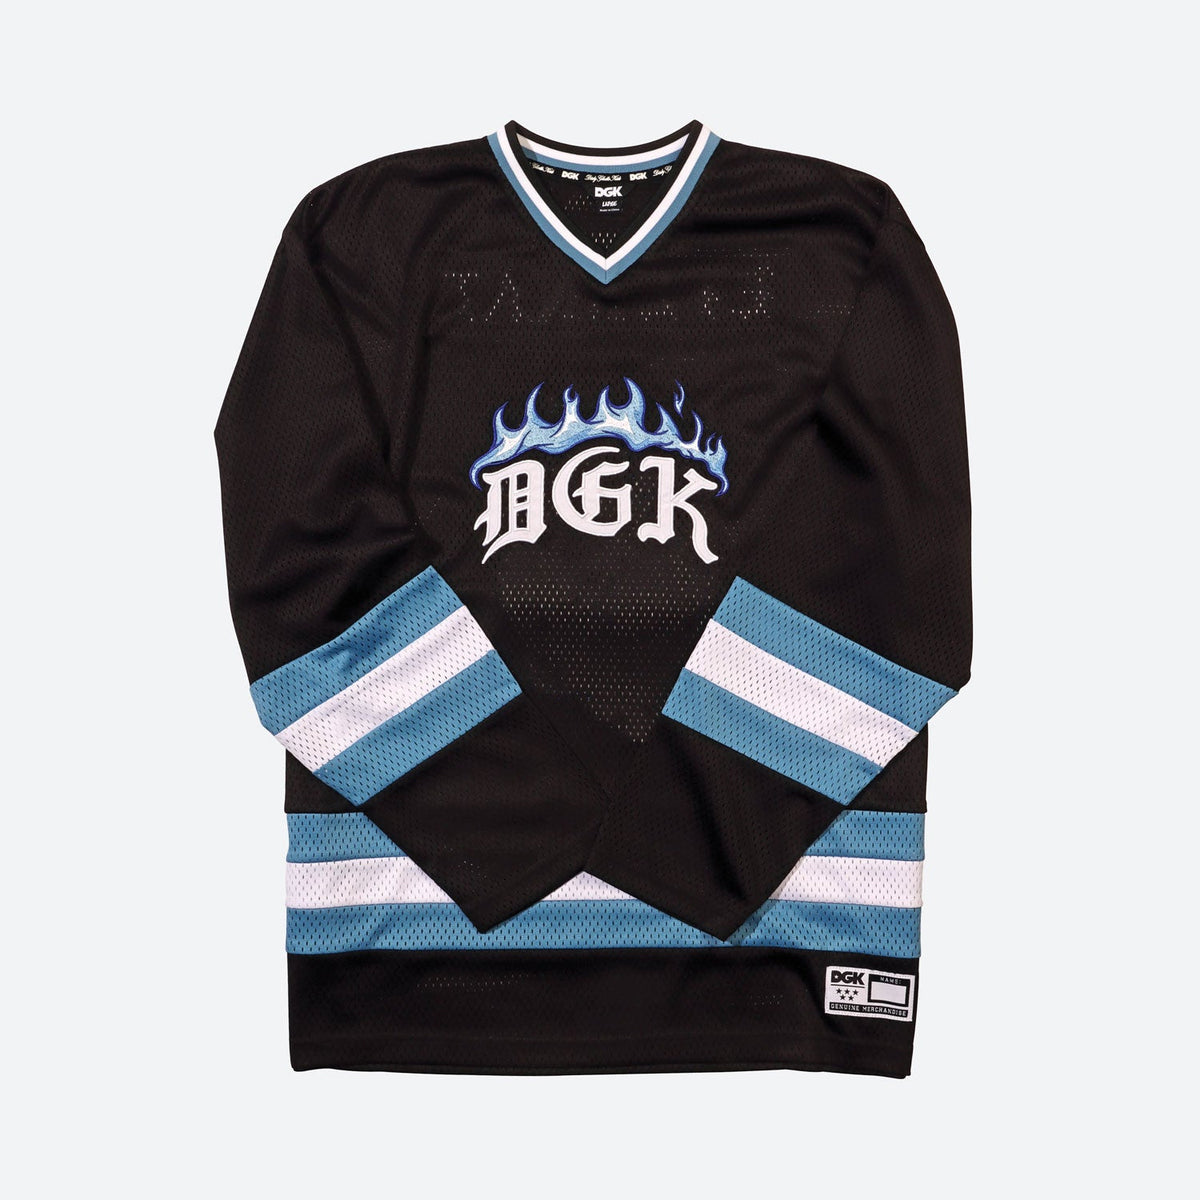 NHL Jerseys, Hockey Jerseys, Hockey Sweaters